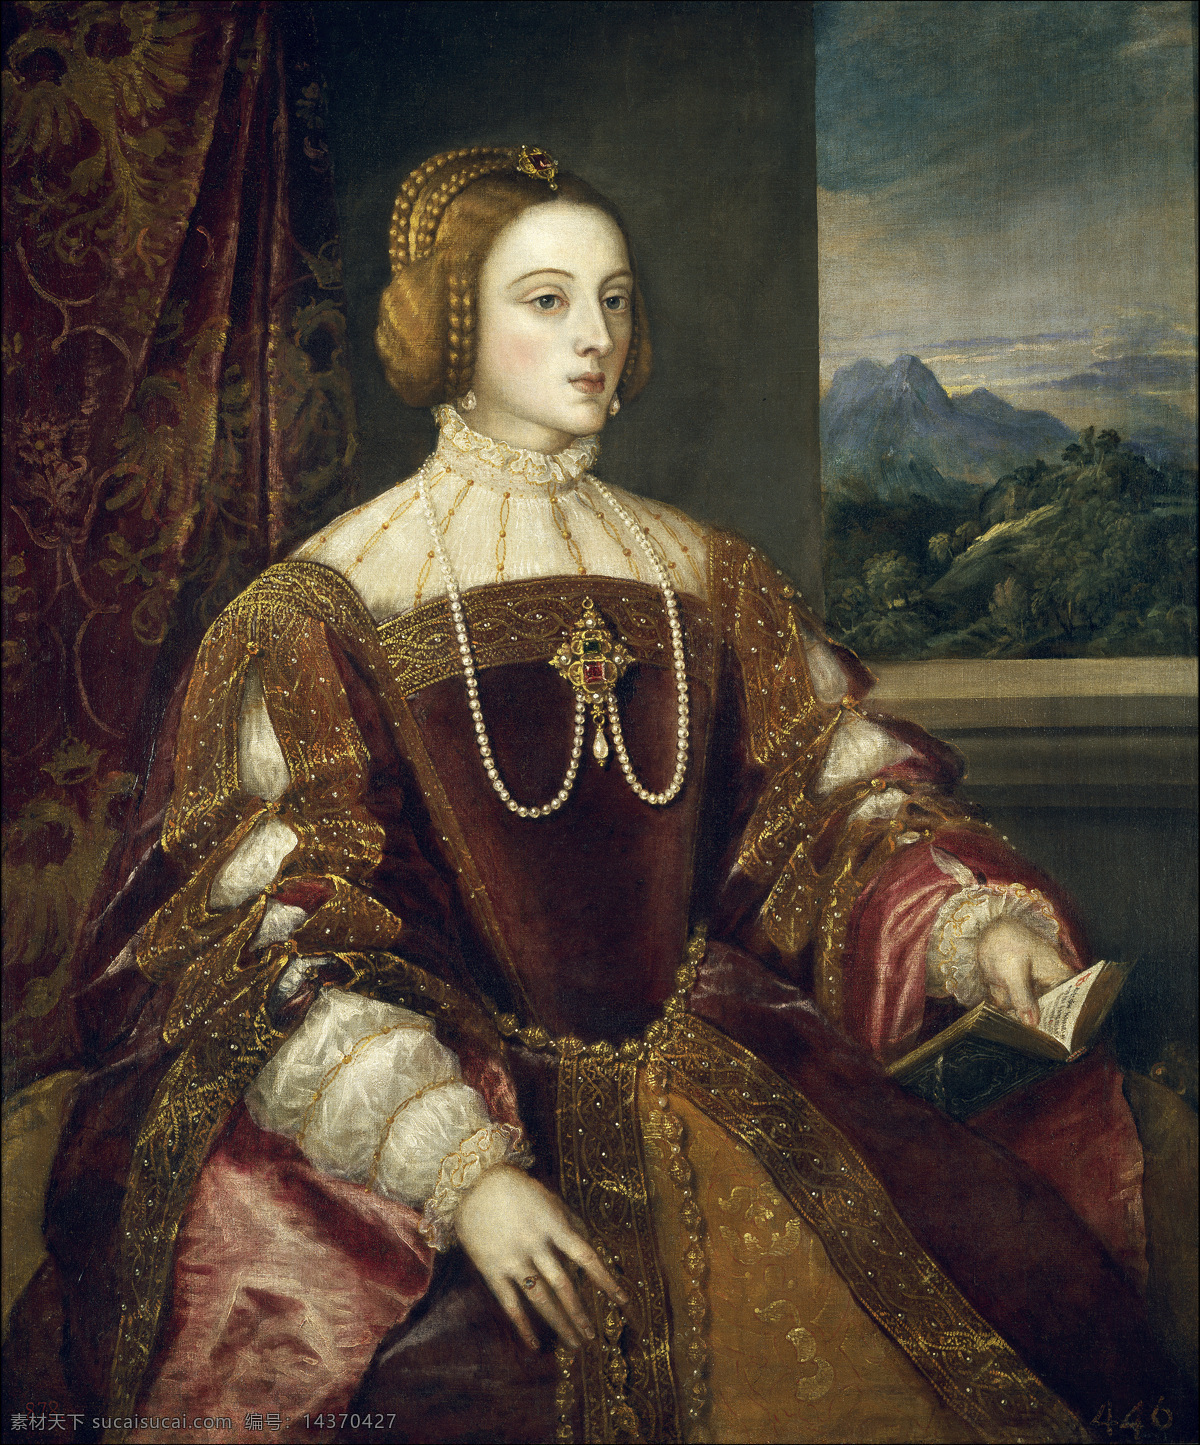 葡萄牙 公主 莎 贝拉 圣 罗马 皇帝 查理 五世 皇后 西班牙王后 菲利普 二世 母 美丽端庄 世纪 巴洛克 时代 油画 绘画书法 文化艺术